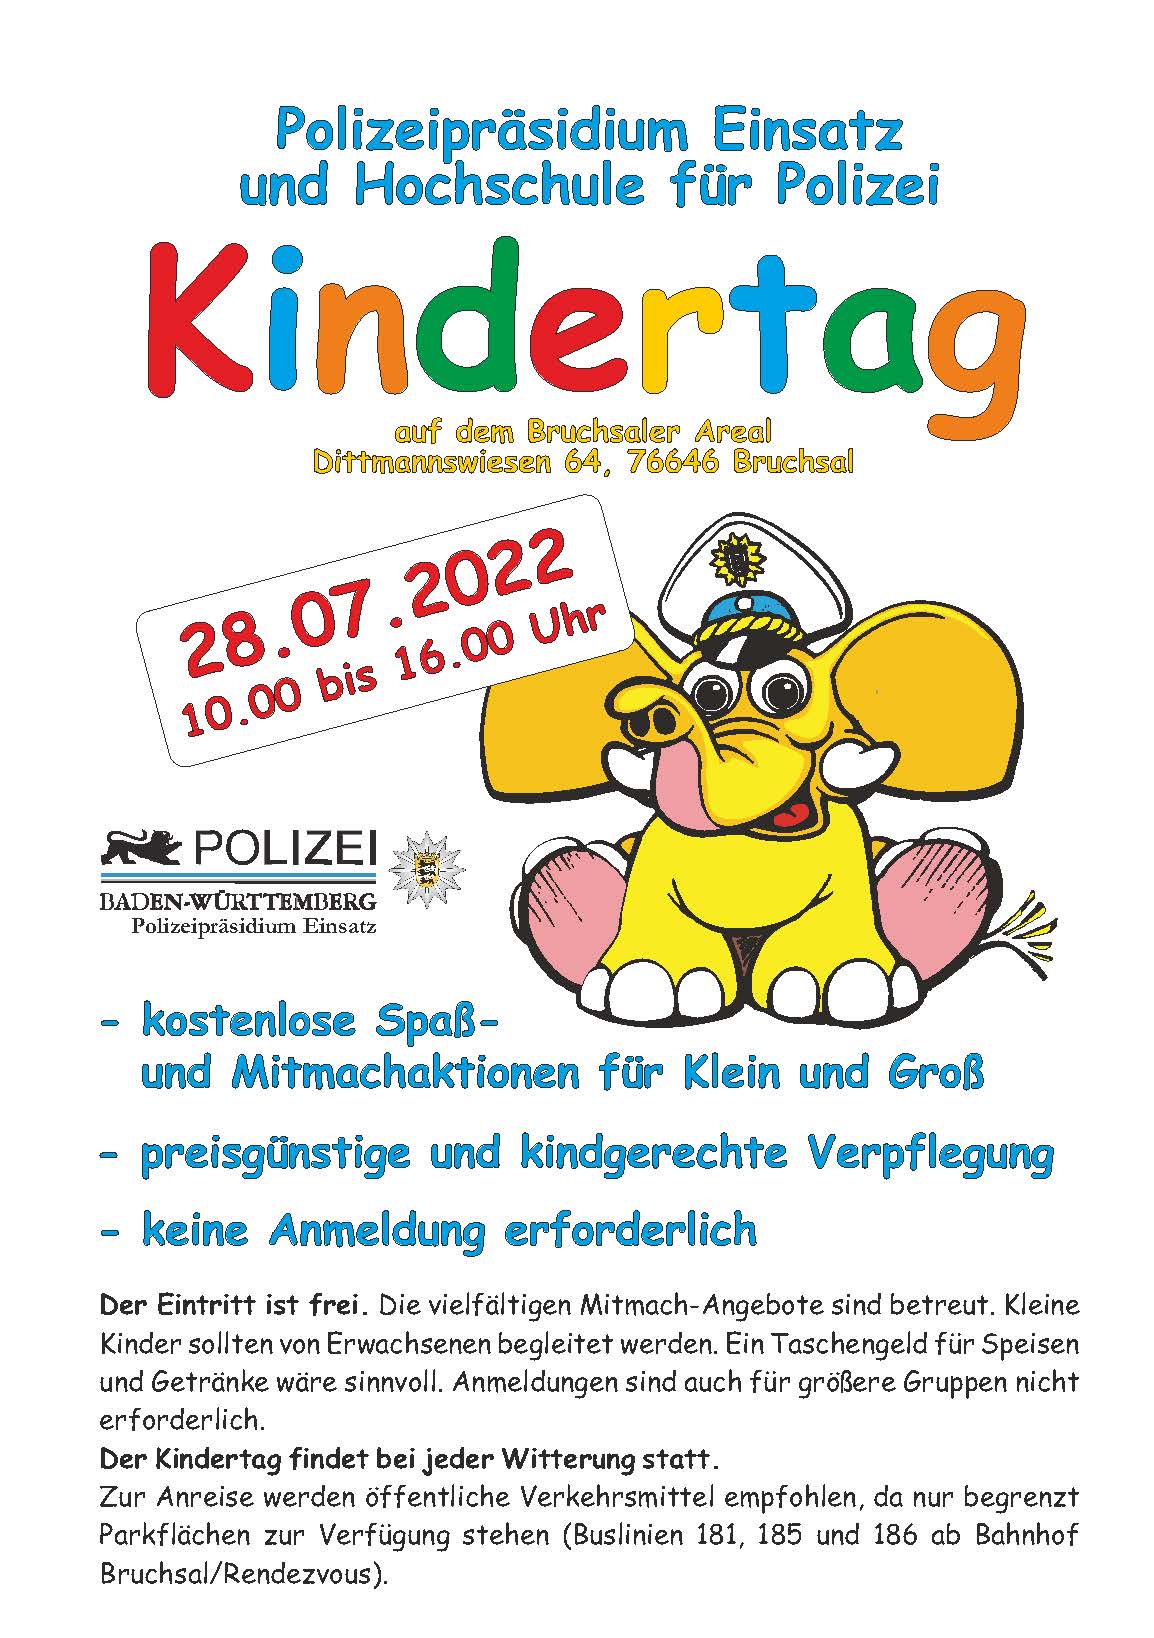 Kindertag / Polizeipräsidium Einsatz & Hochschule für Polizei